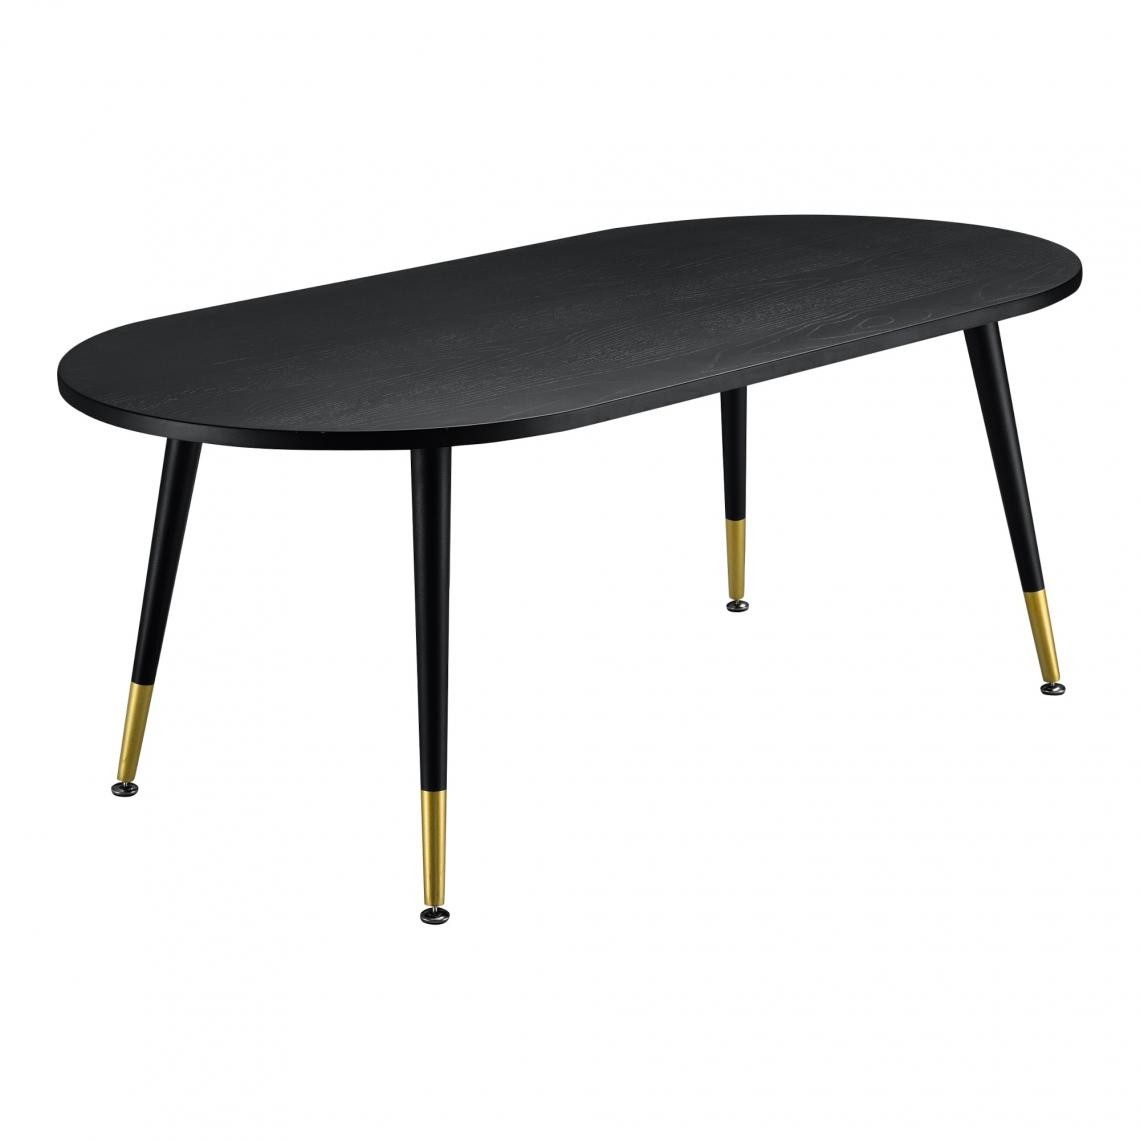 Helloshop26 - Table basse design élégant pour salon table avec pieds solides MDF métal revêtu par poudre 47 x 120 x 60 cm effet chêne noir mat laqué laiton 03_0006157 - Tables basses